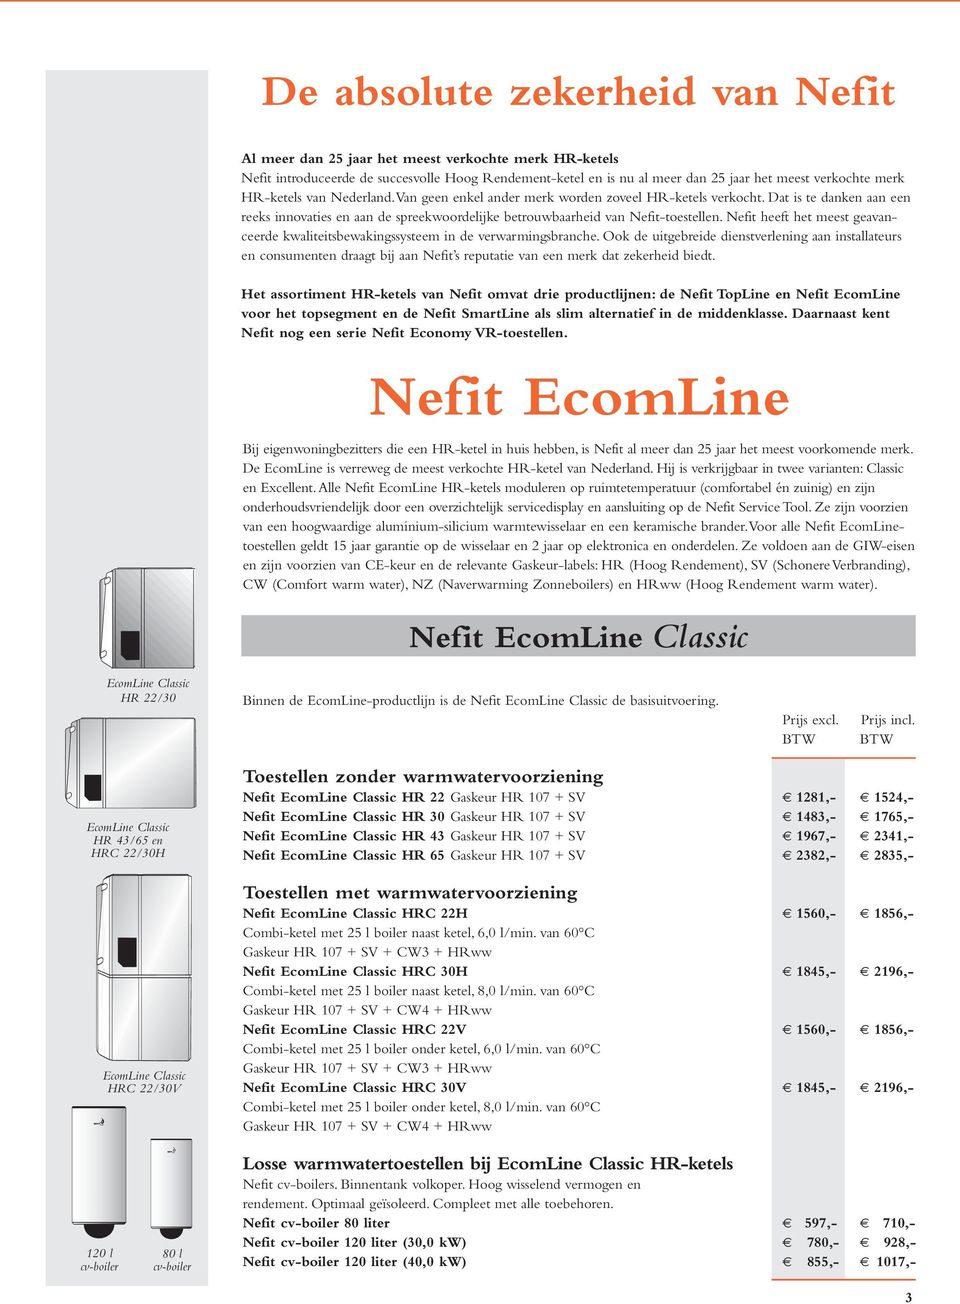 Nefit heeft het meest geavanceerde kwaliteitsbewakingssysteem in de verwarmingsbranche.